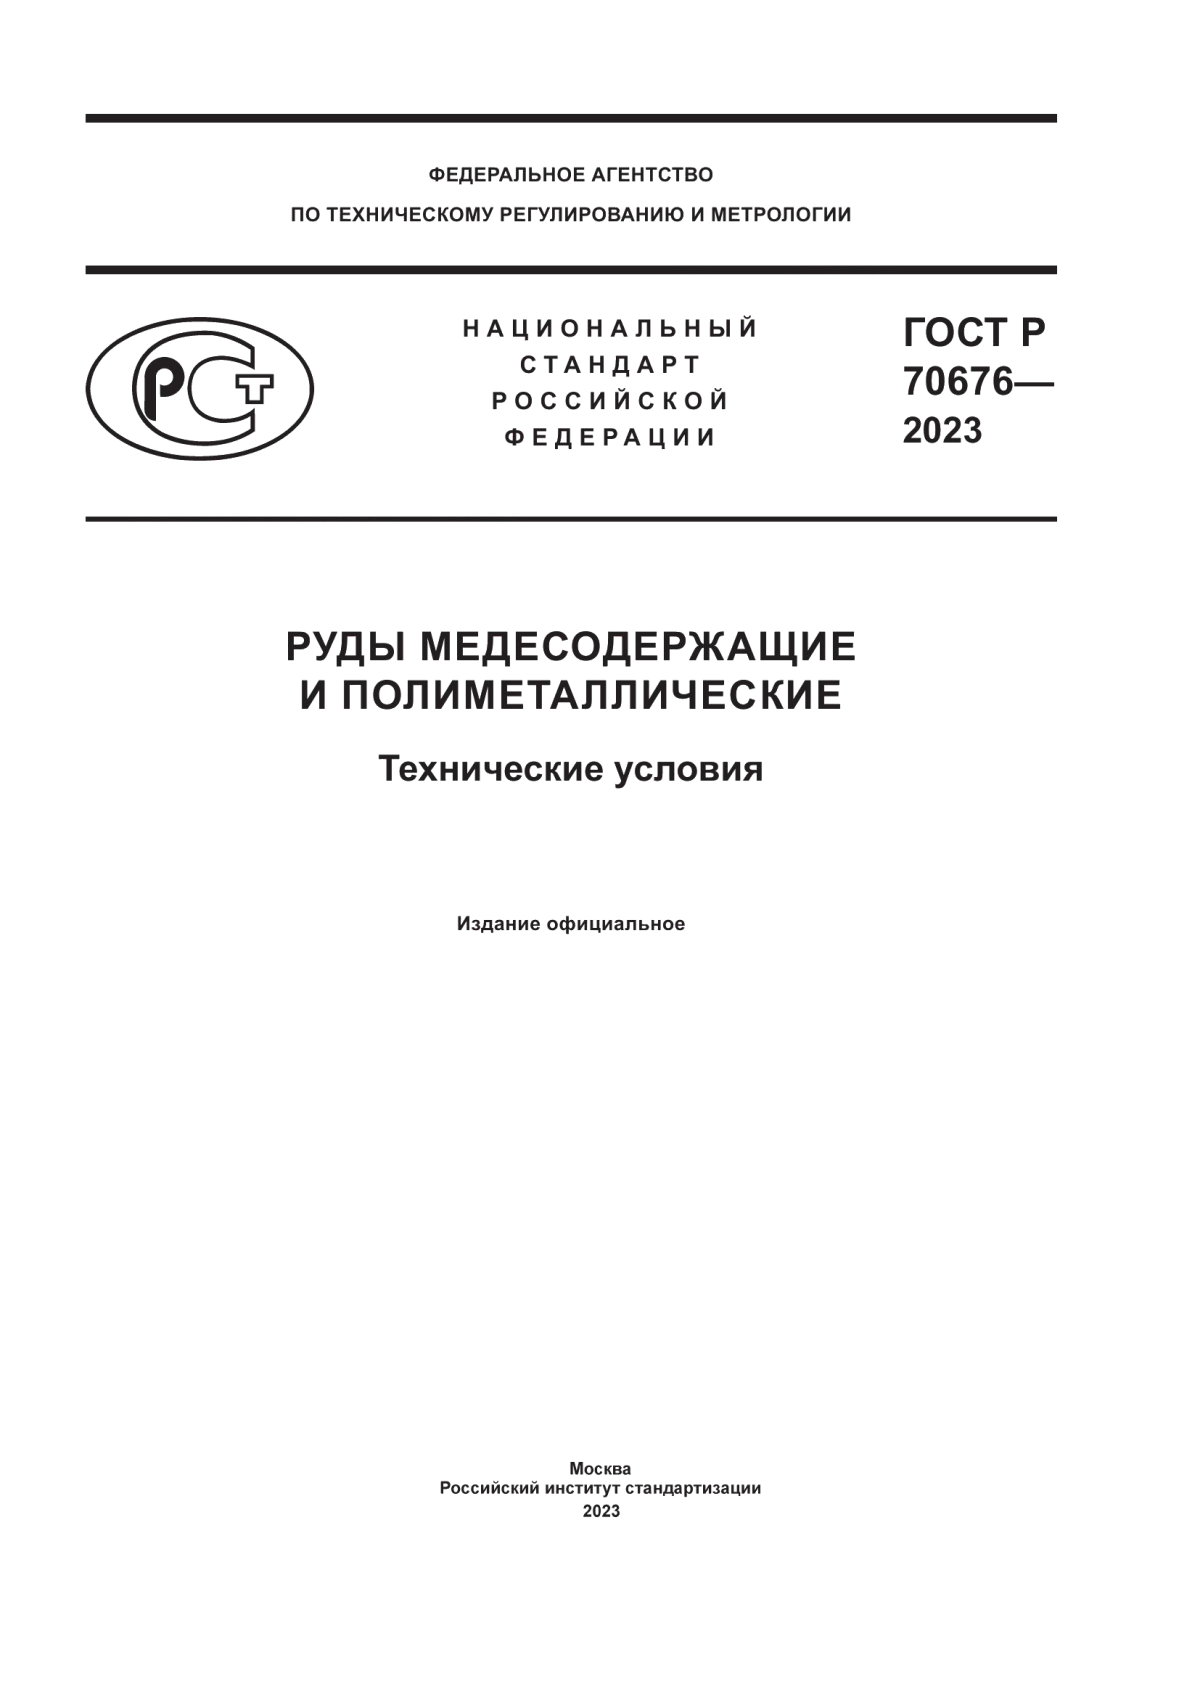 ГОСТ Р 70676-2023 Руды медесодержащие и полиметаллические. Технические условия